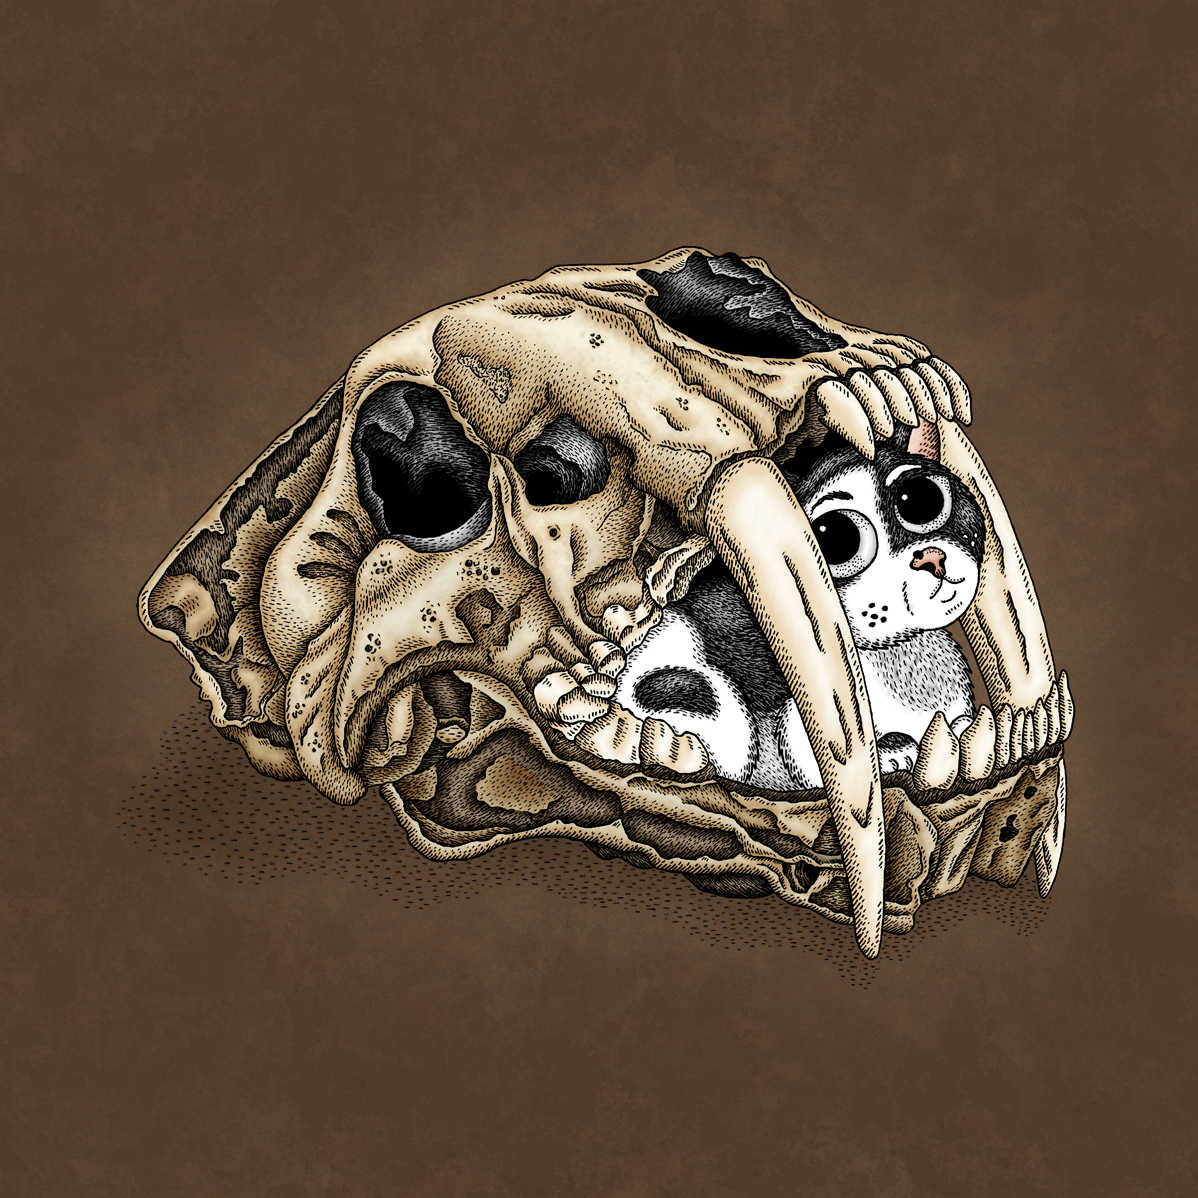 Hidden Kitten: Saber Tooth Skull by Jenny Bommert, 2016